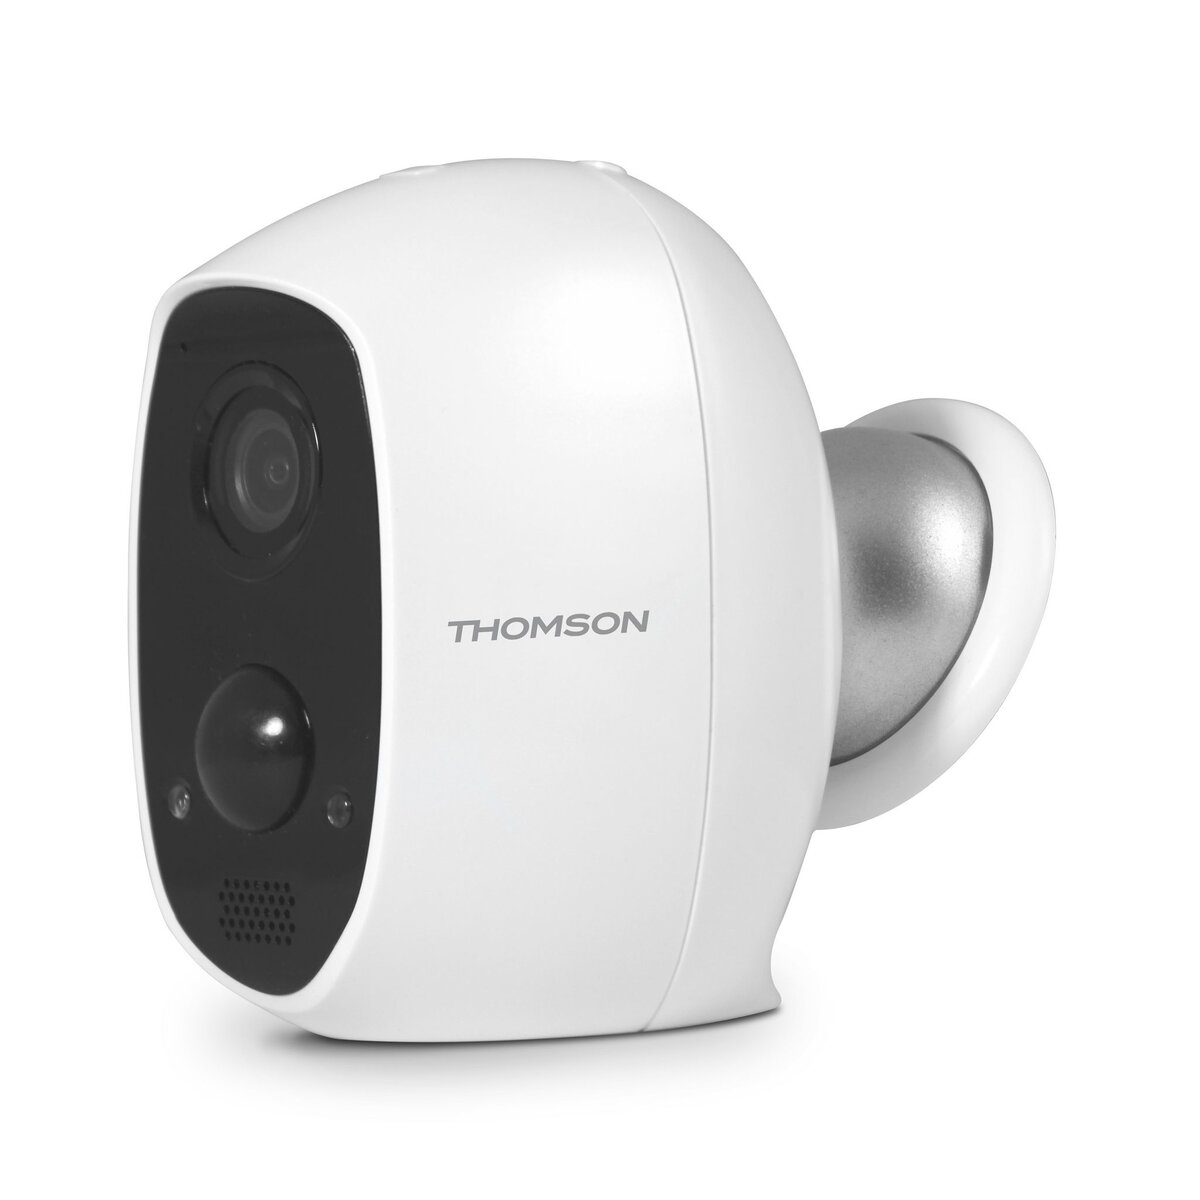 THOMSON Caméra autonome rechargeable Full HD - Intérieure et extérieure